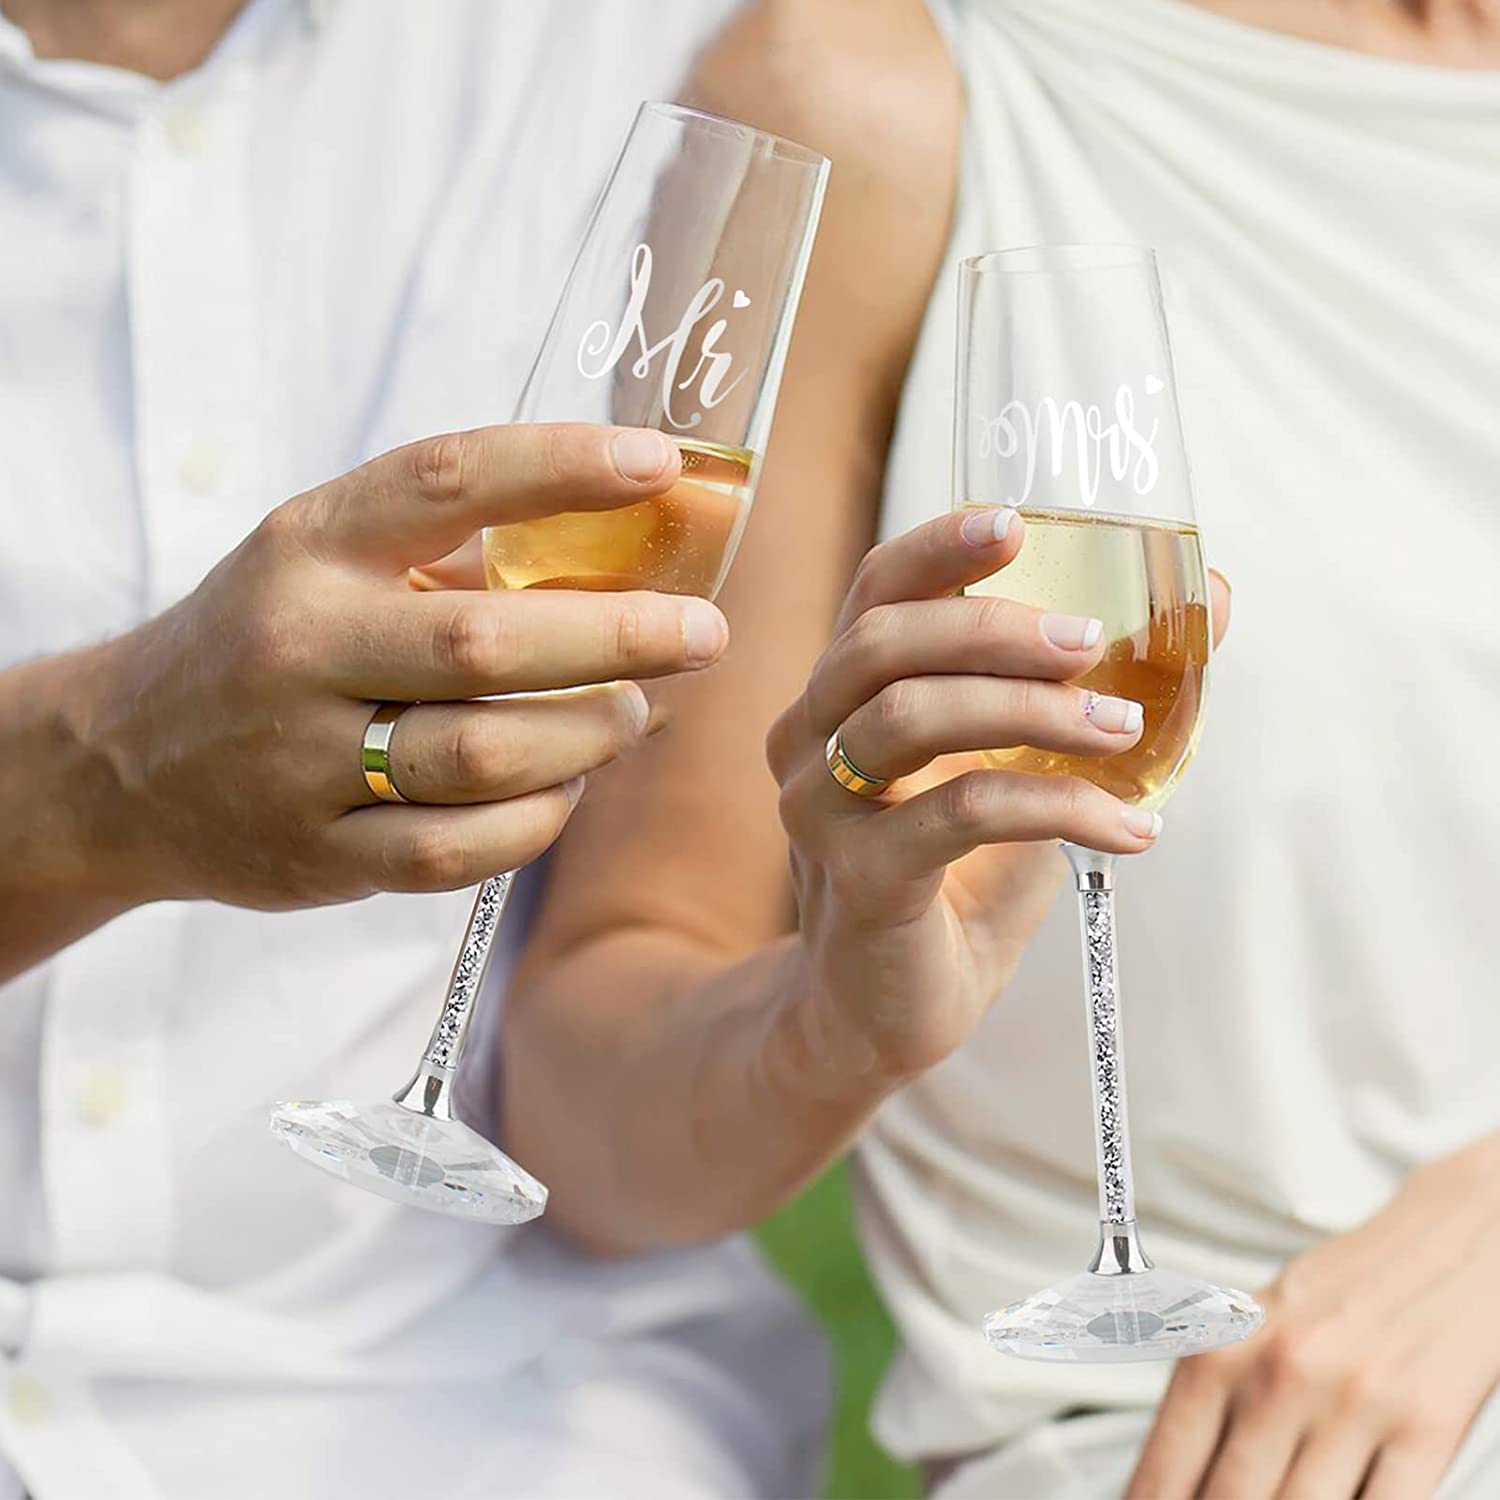 https://varlka.com/cdn/shop/products/wedding-cake-knife-and-server-set-crystal-champagne-flutes-glasses-engraved-mr-mrs-cake-cutting-set-for-wedding-bride-and-groom-toasting-champagne-flutes-annive-392576.jpg?v=1699263662